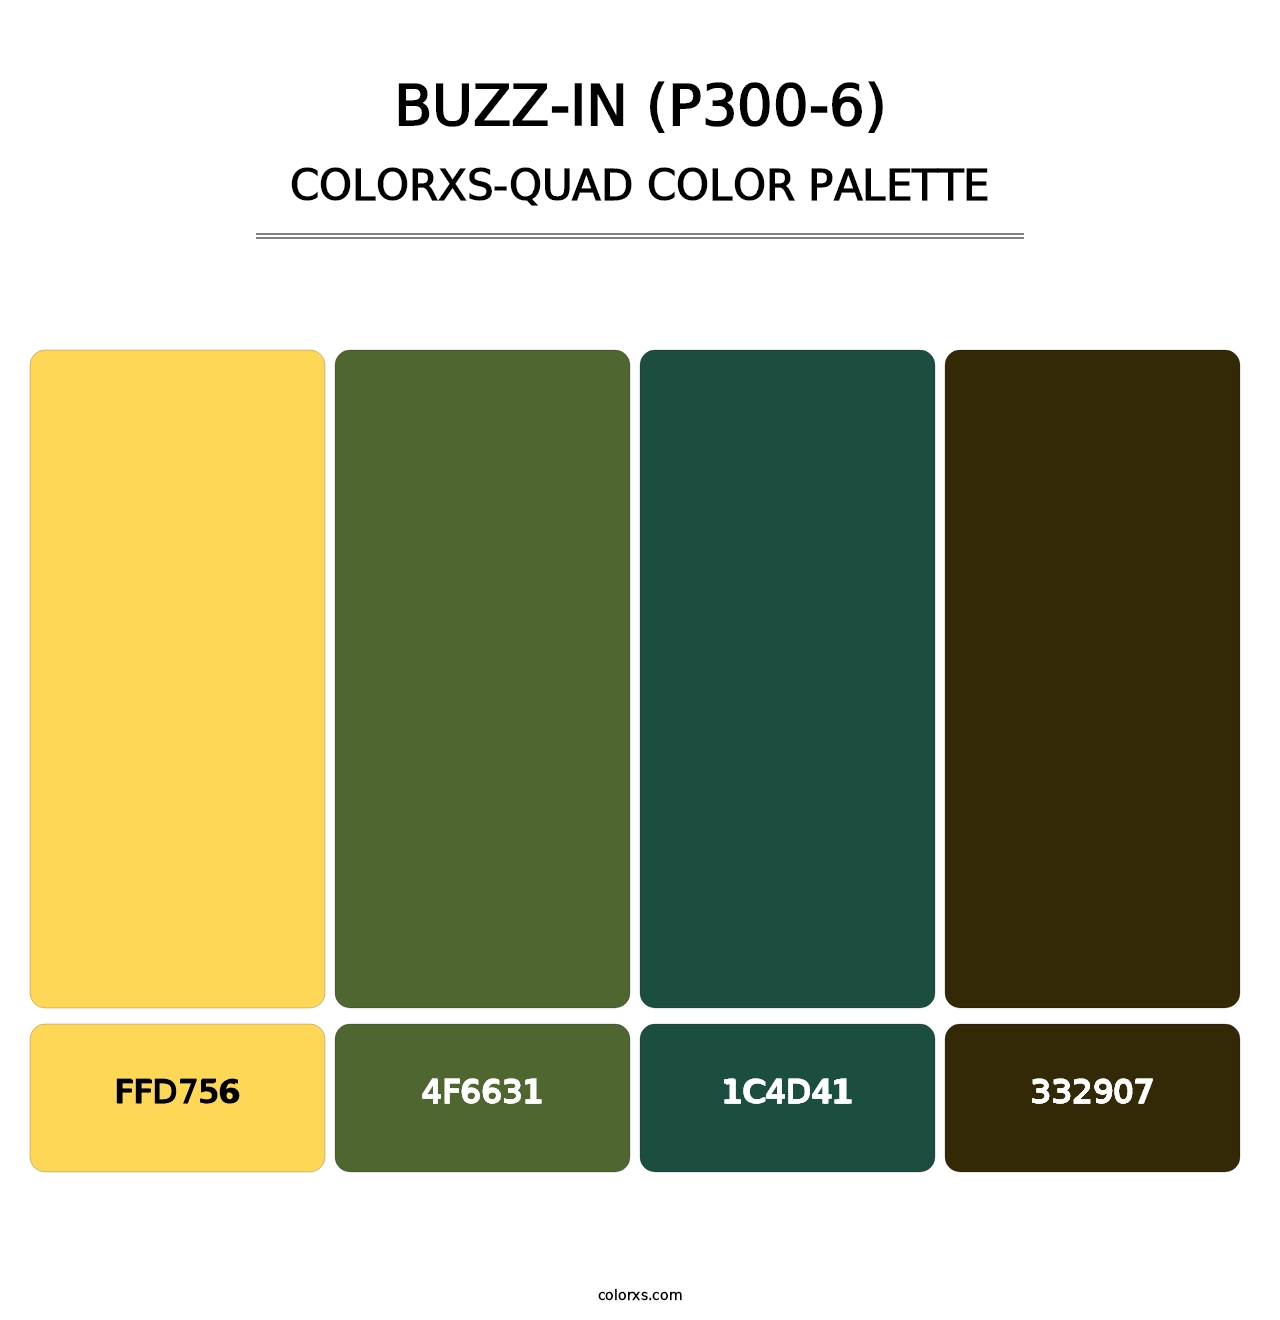 Buzz-In (P300-6) - Colorxs Quad Palette